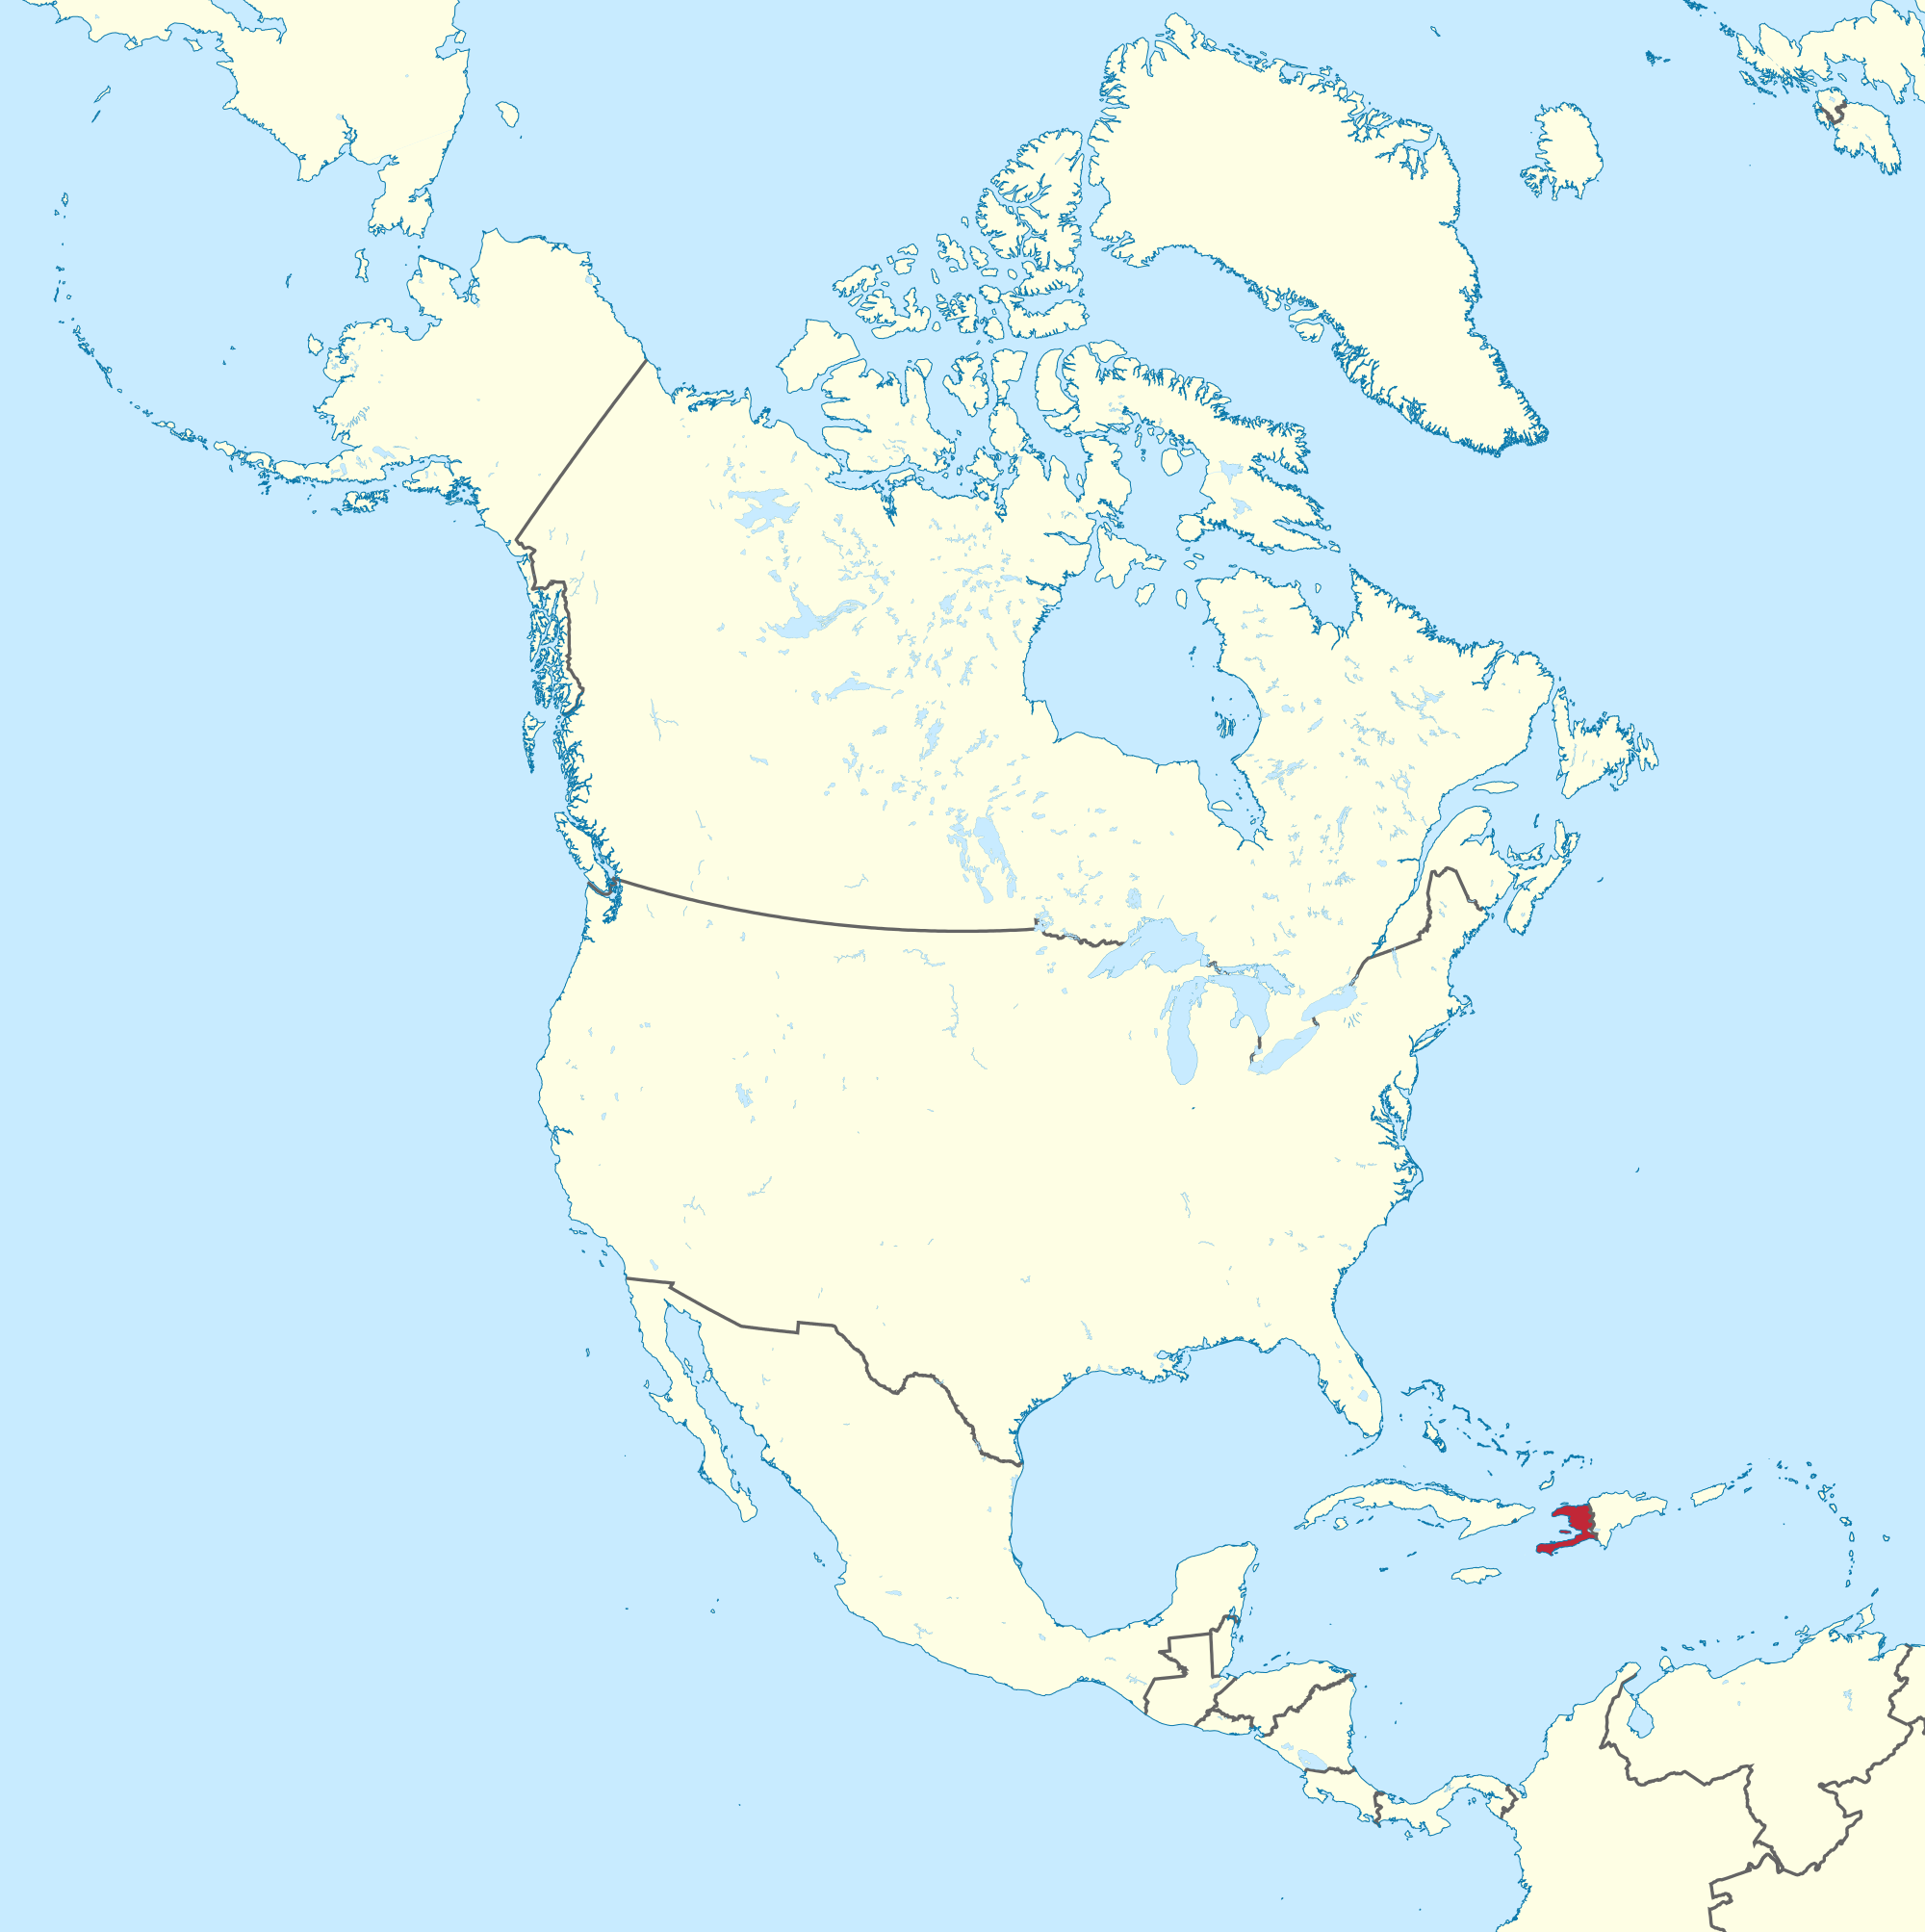 Haiti Map